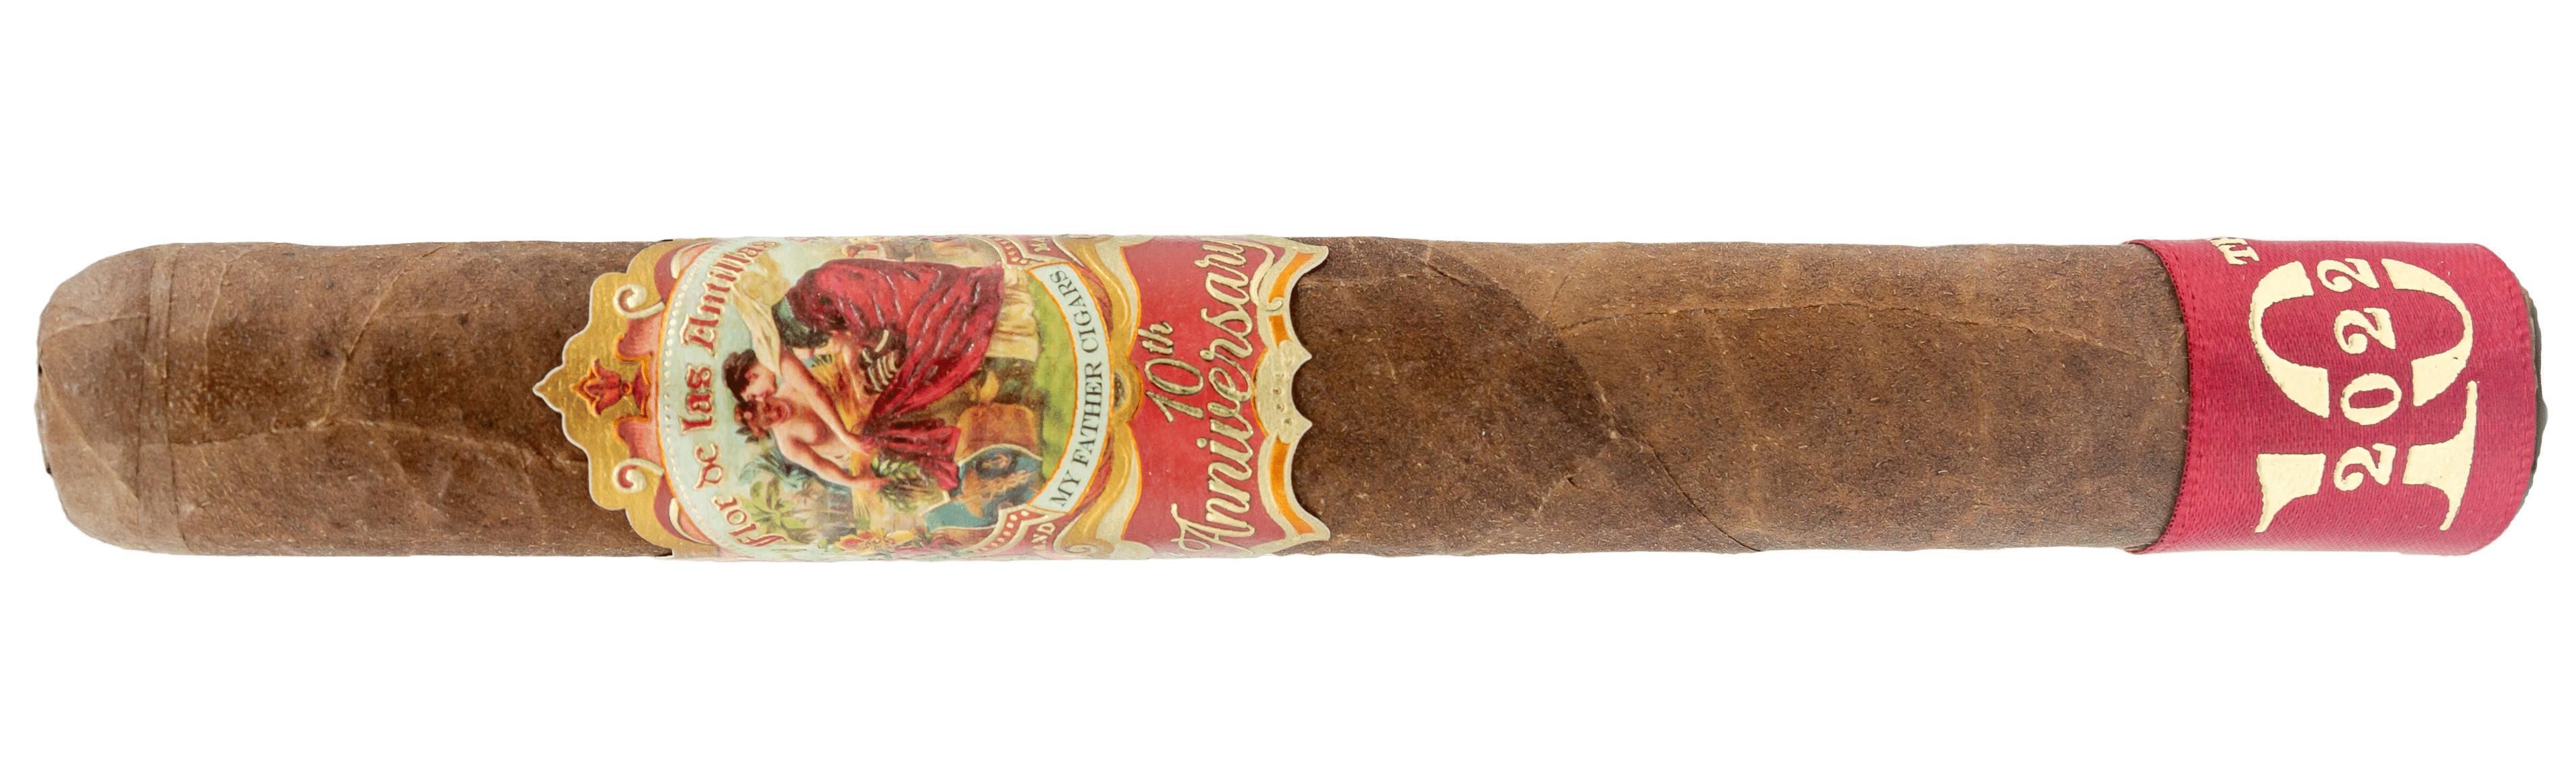 My Father Flor de las Antillas Toros, Empty cigar box